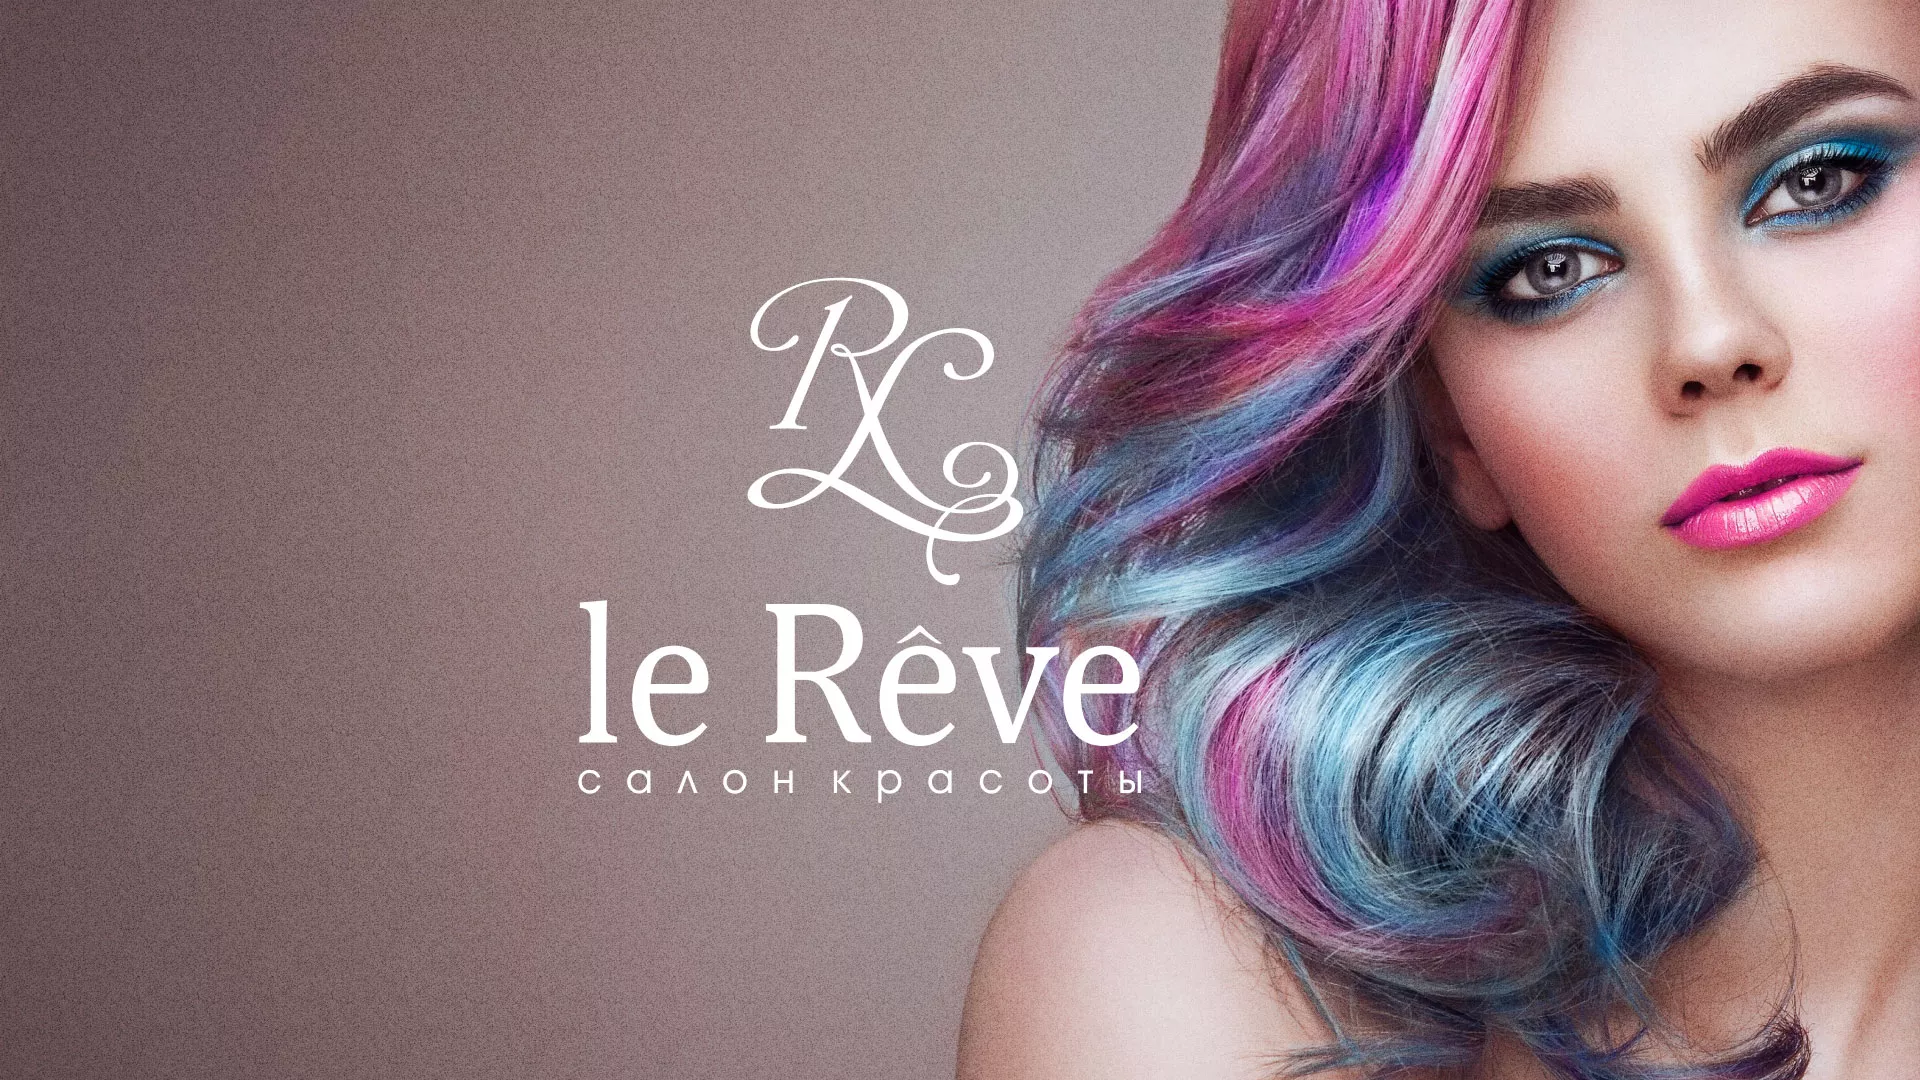 Создание сайта для салона красоты «Le Reve» в Полярном